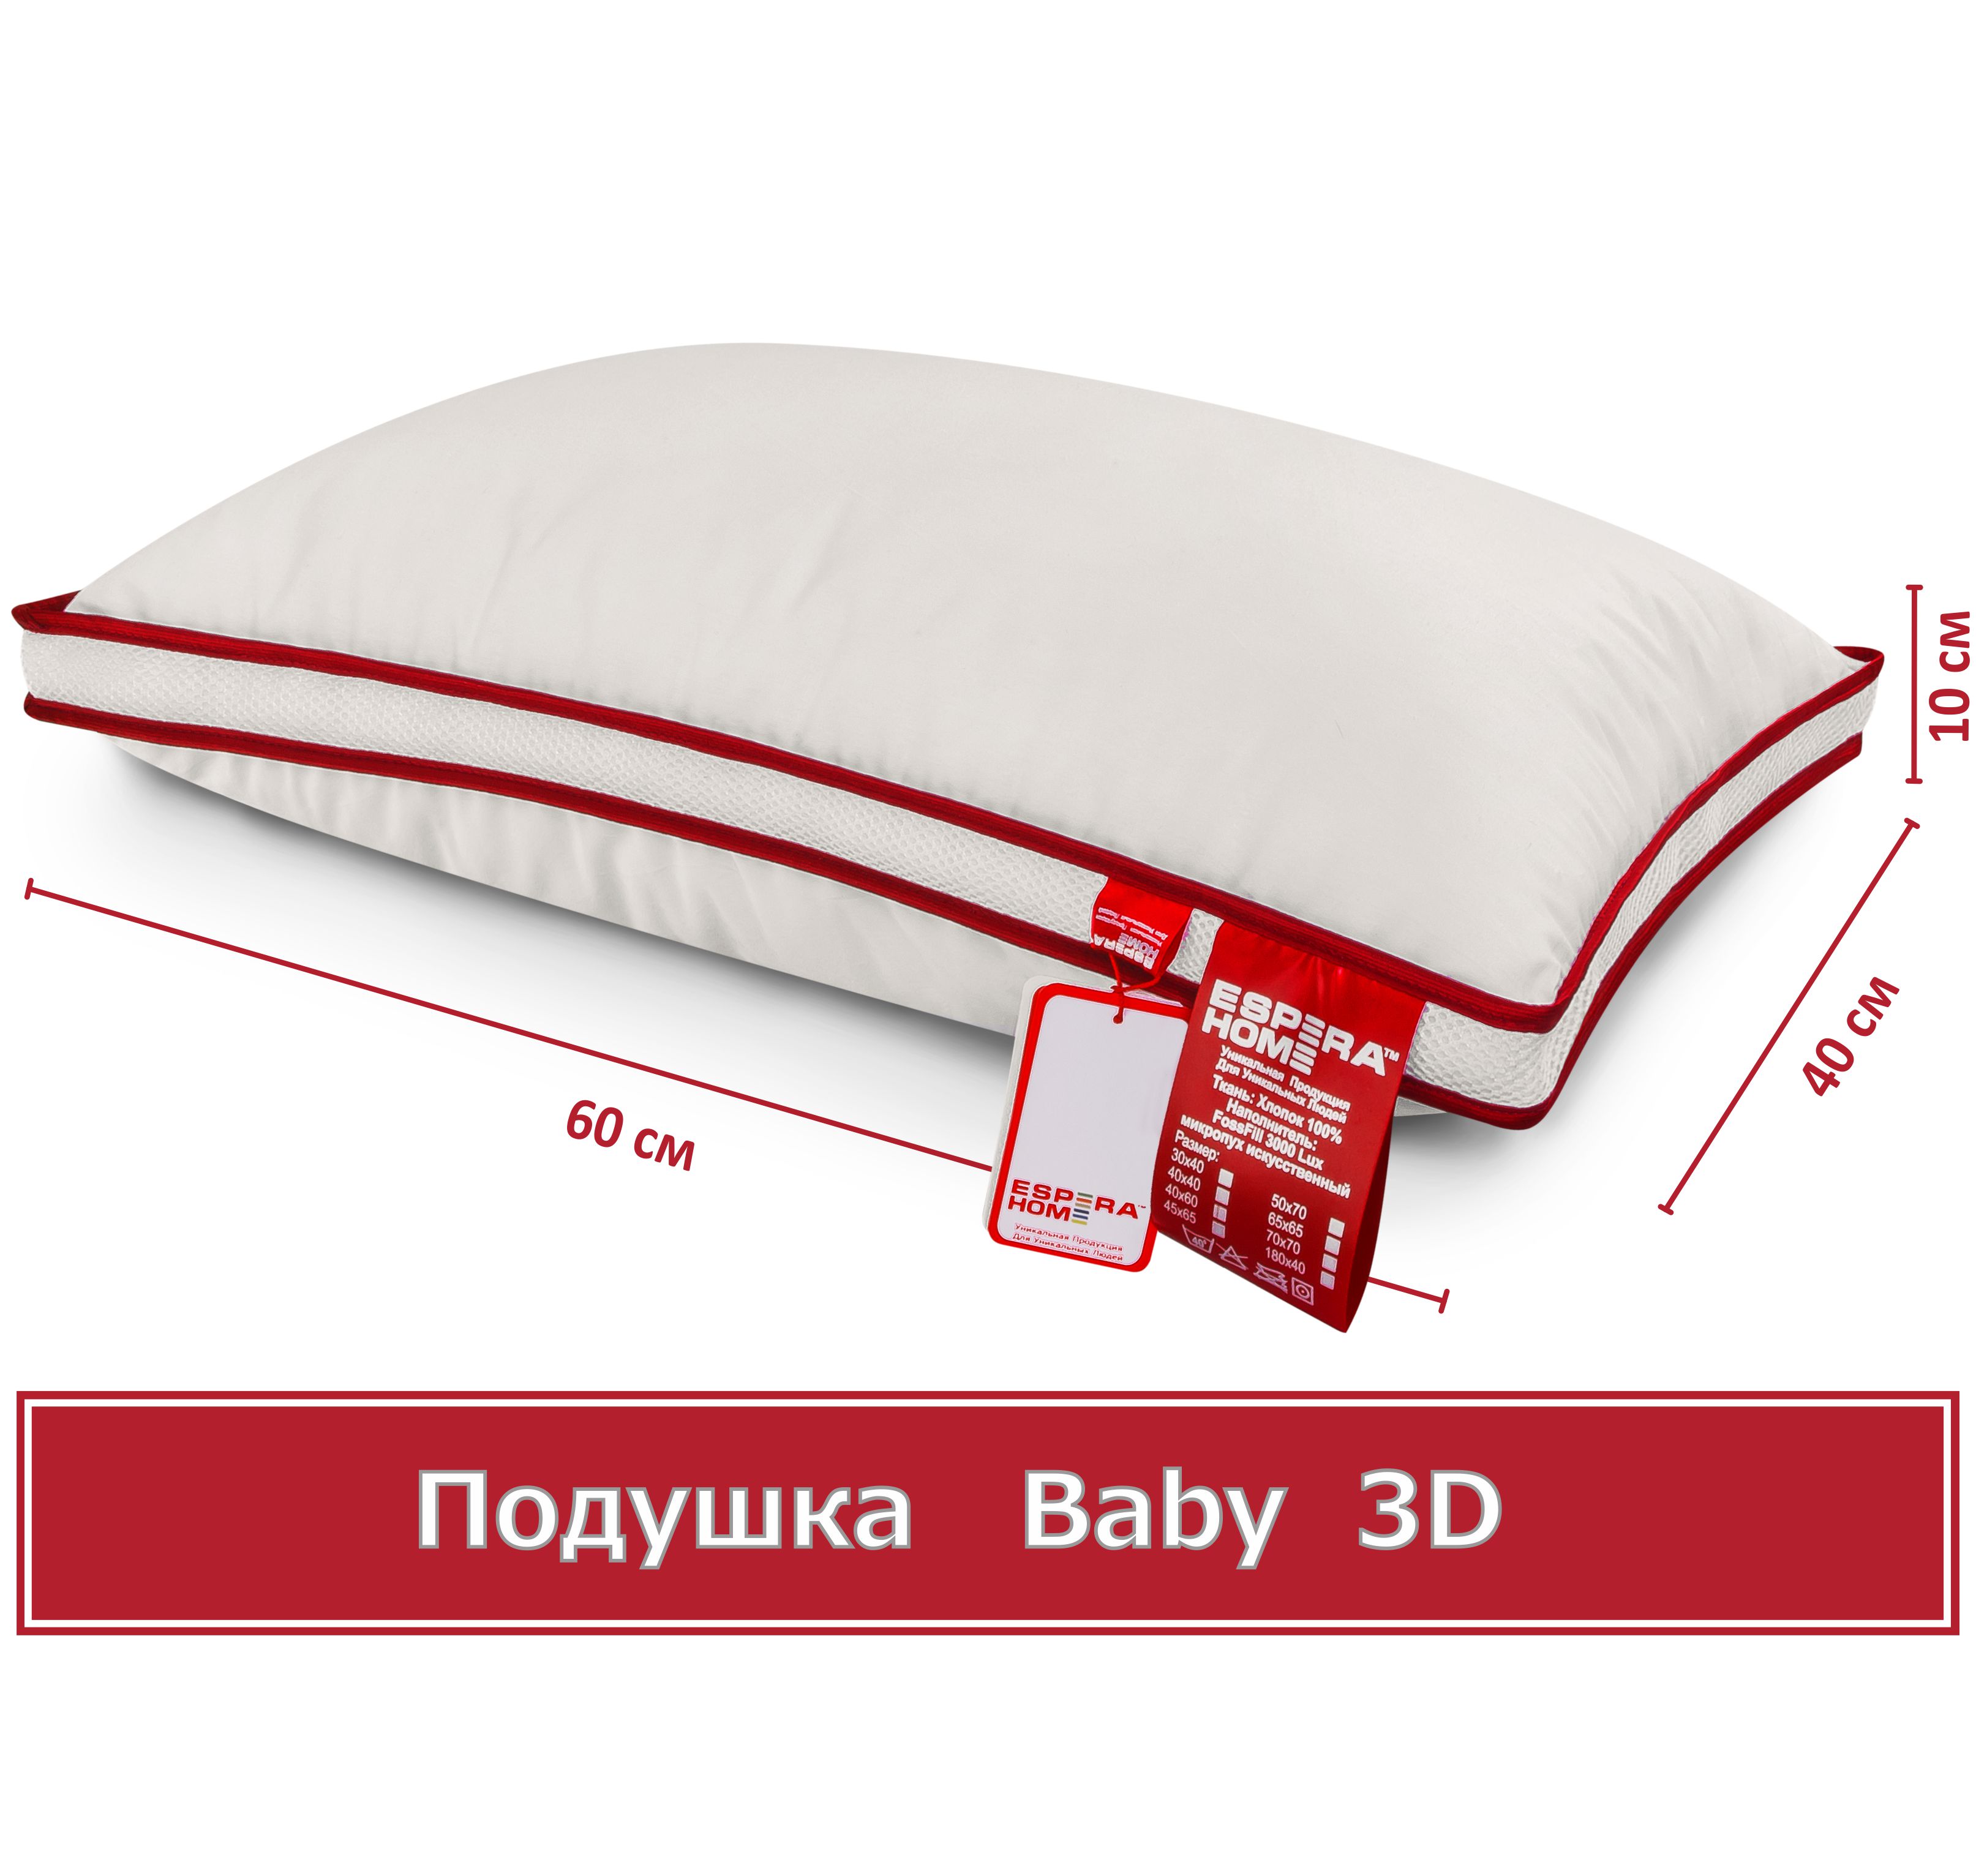 Купить подушку Espera Baby 3D 40см х 60см со скидкой от производителя